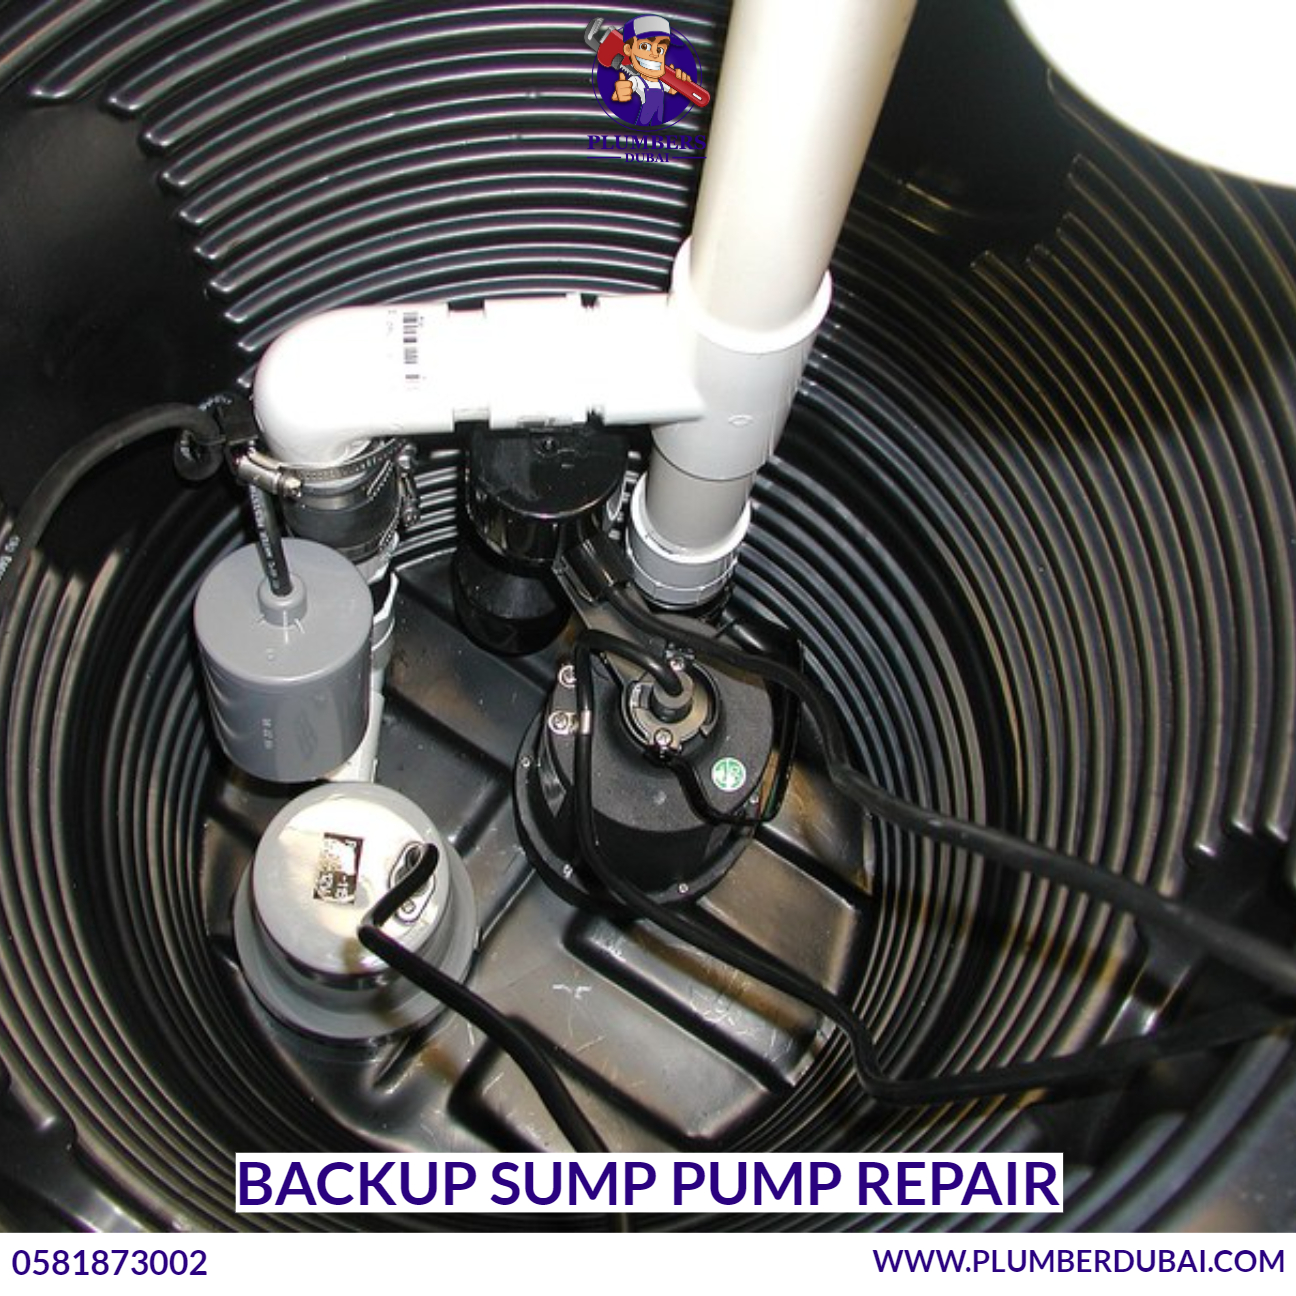 Backup sump pump repair